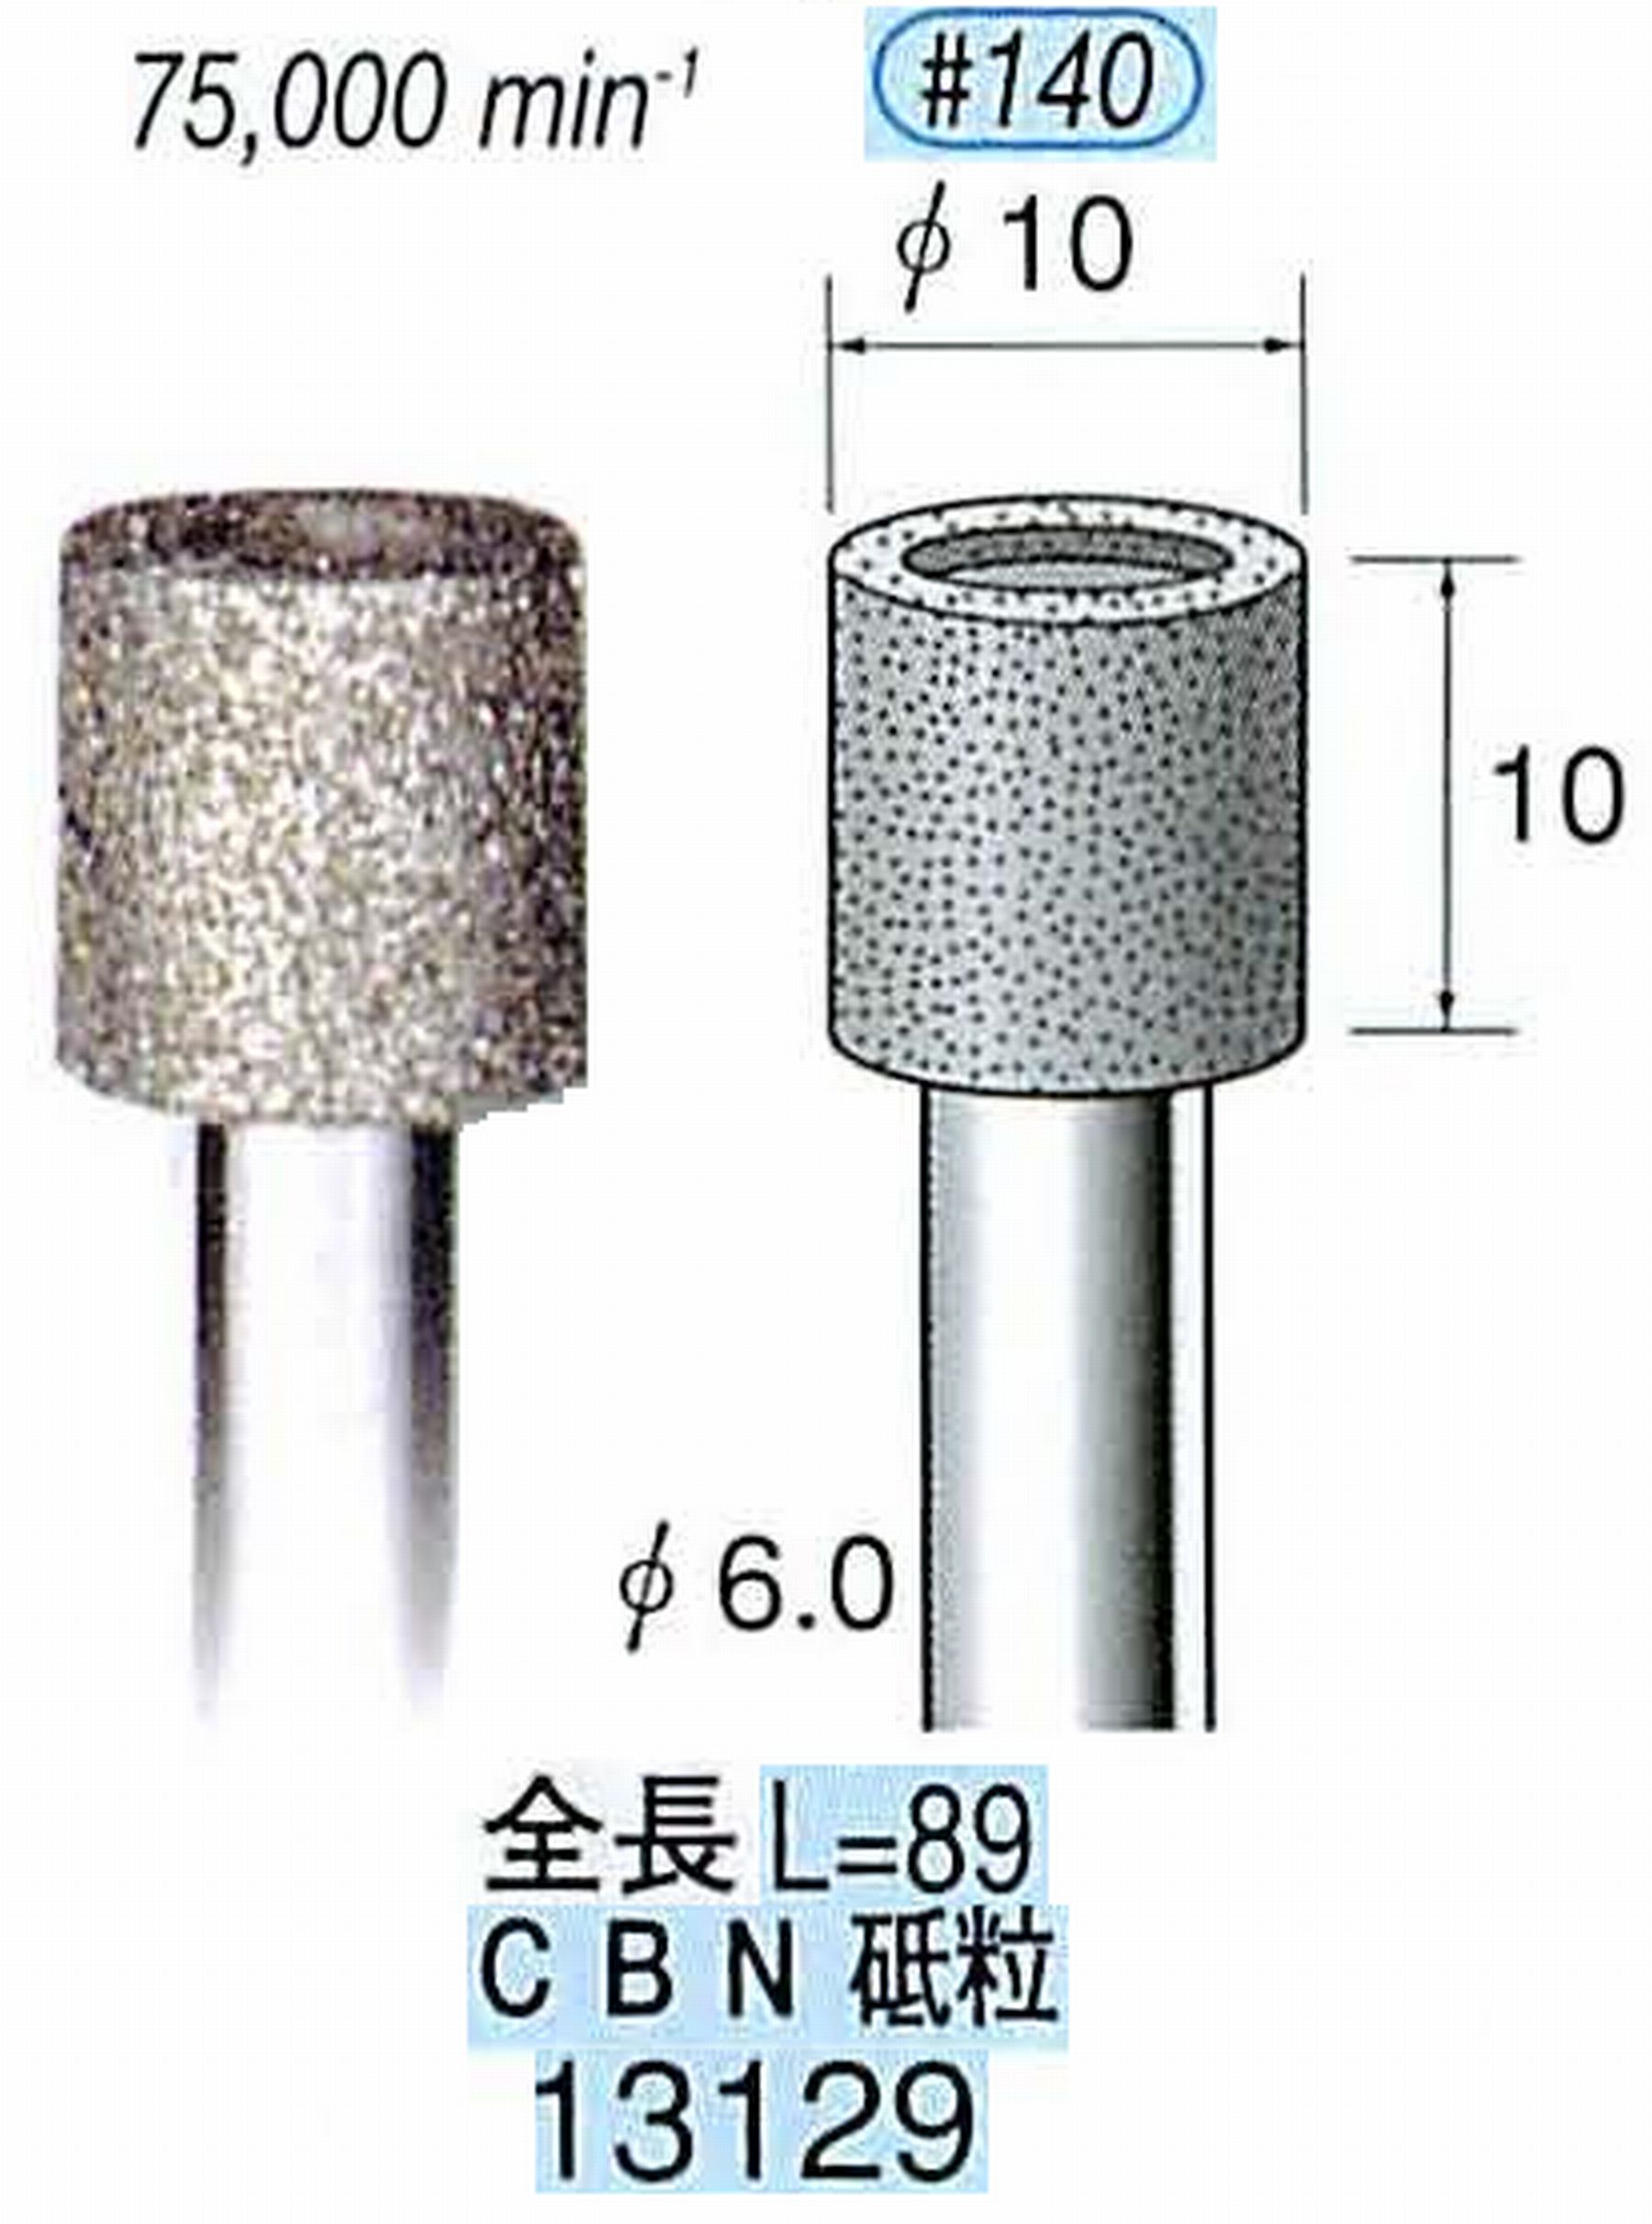 ナカニシ/NAKANISHI 電着CBNバー CBN砥粒 軸径(シャンク)φ6.0mm 13129